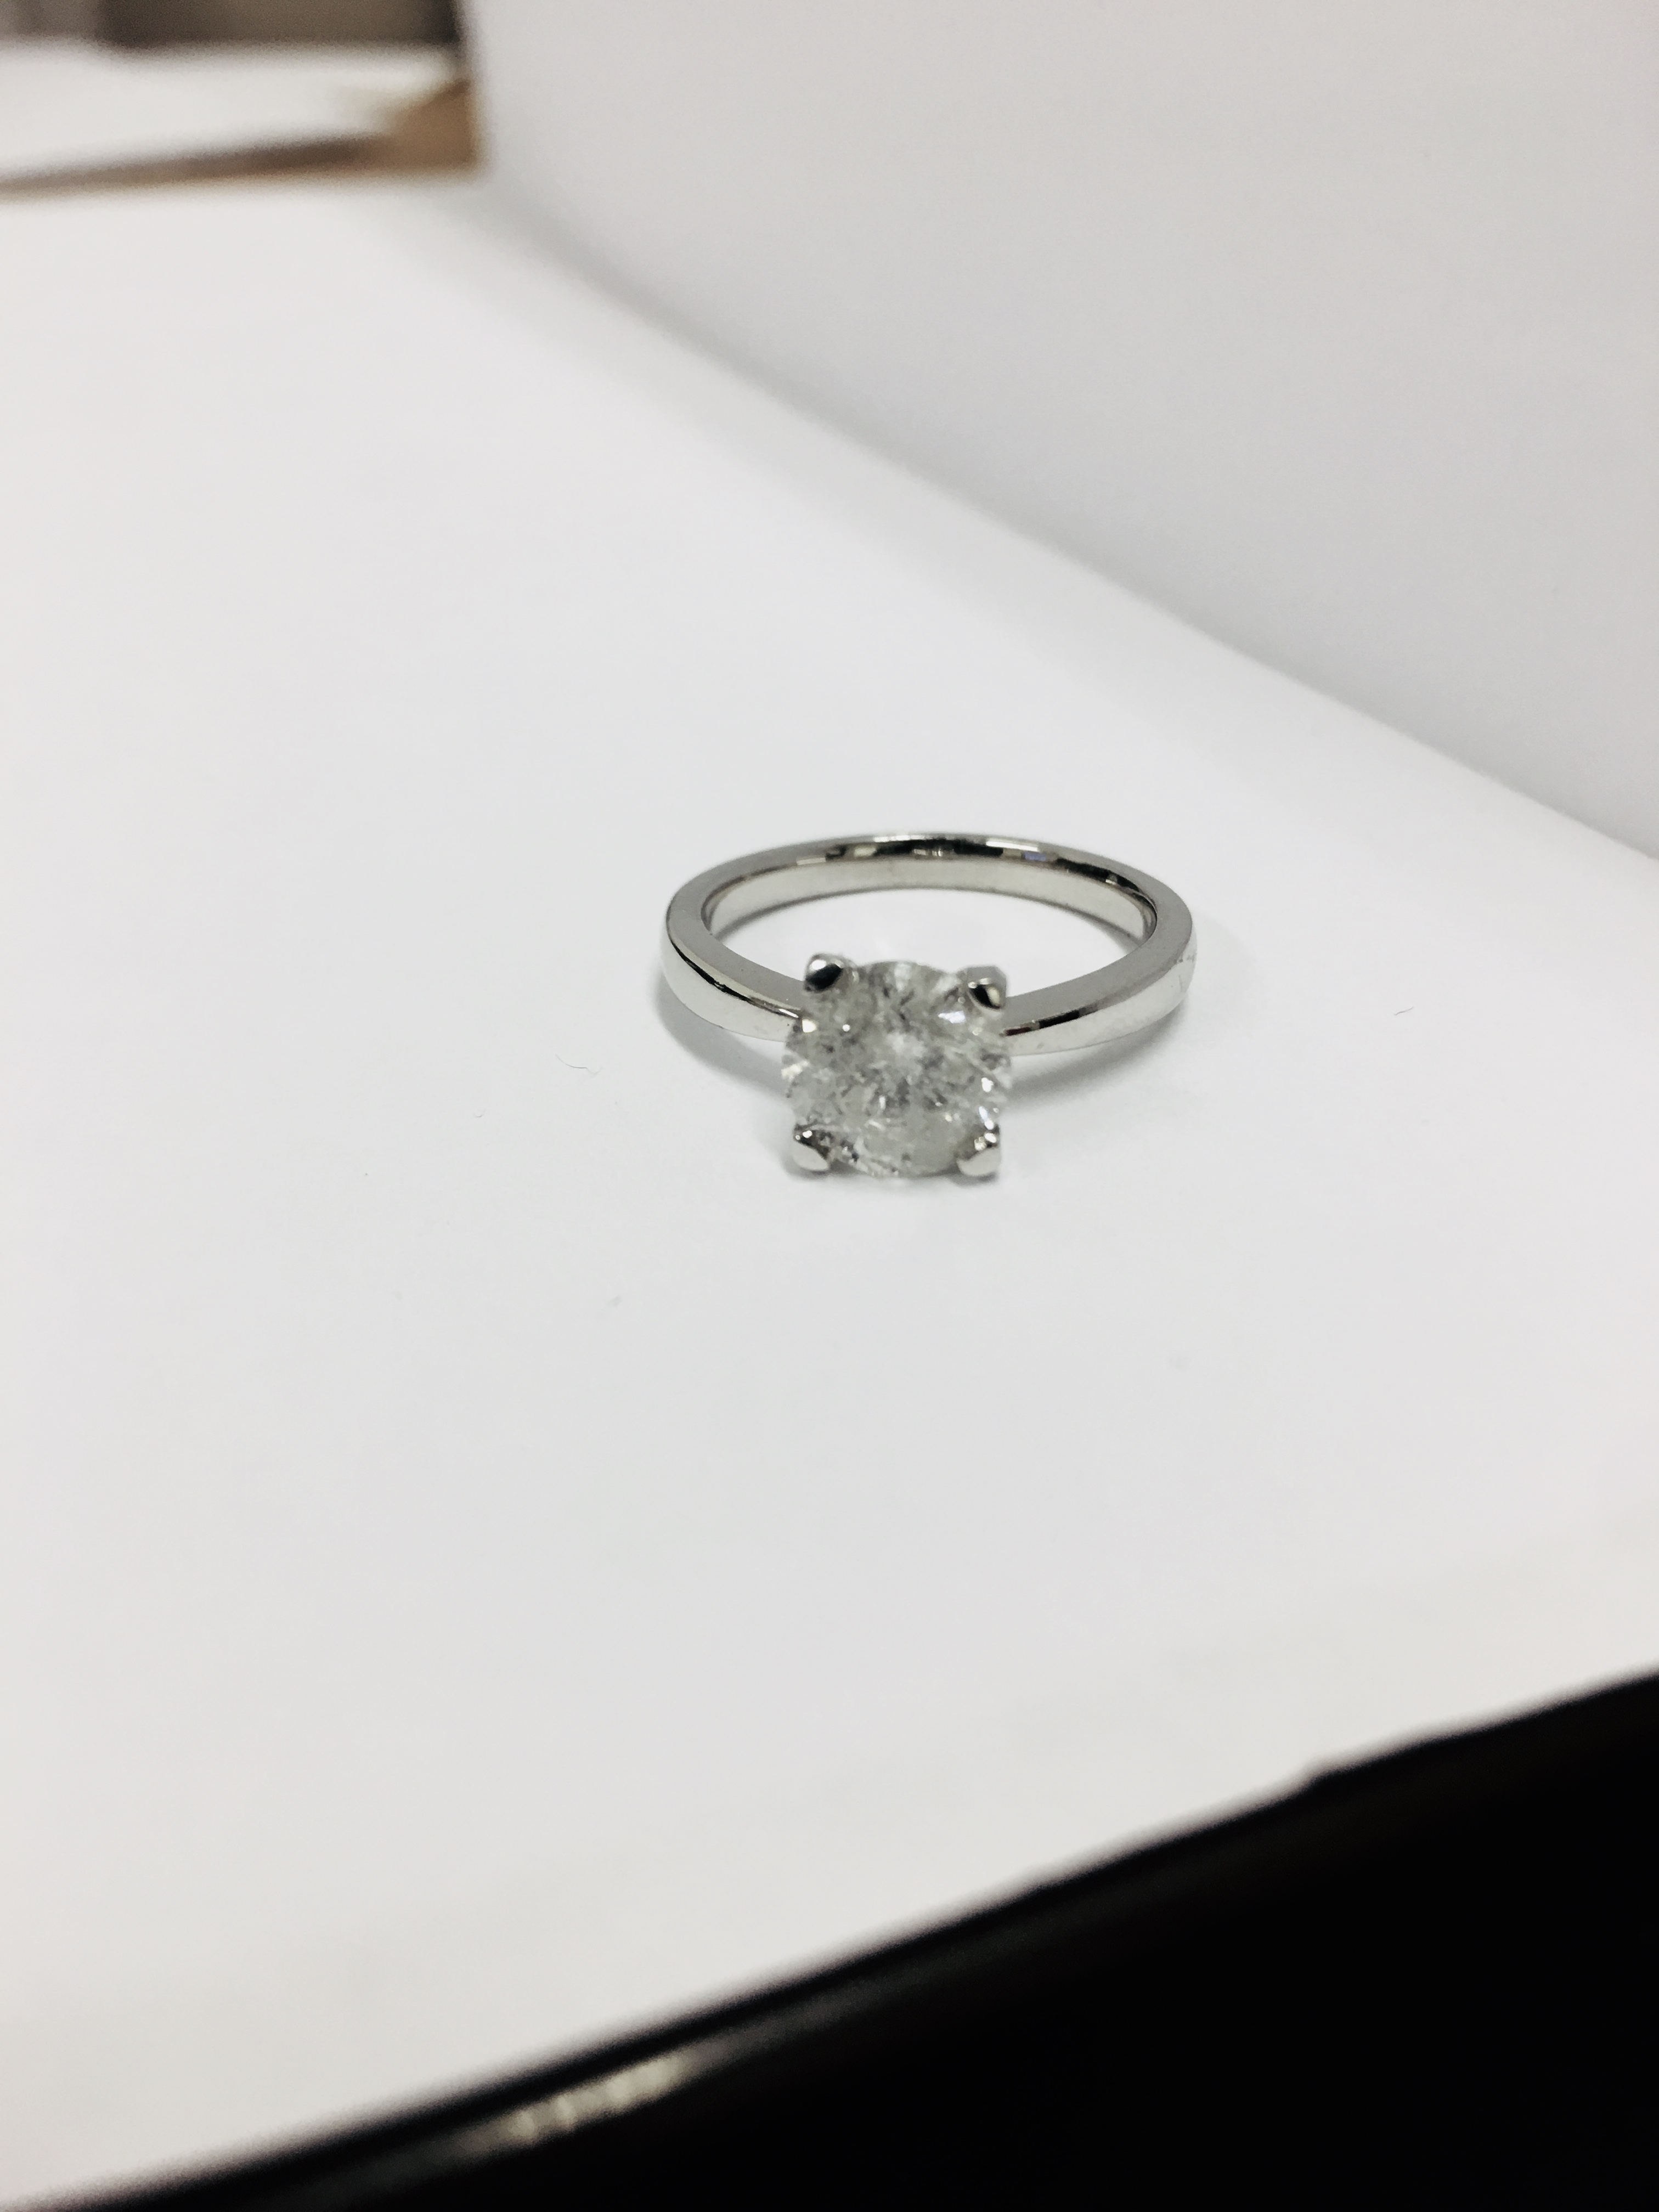 2.08ct diamond solitaire ring set in platinum - Image 21 of 48